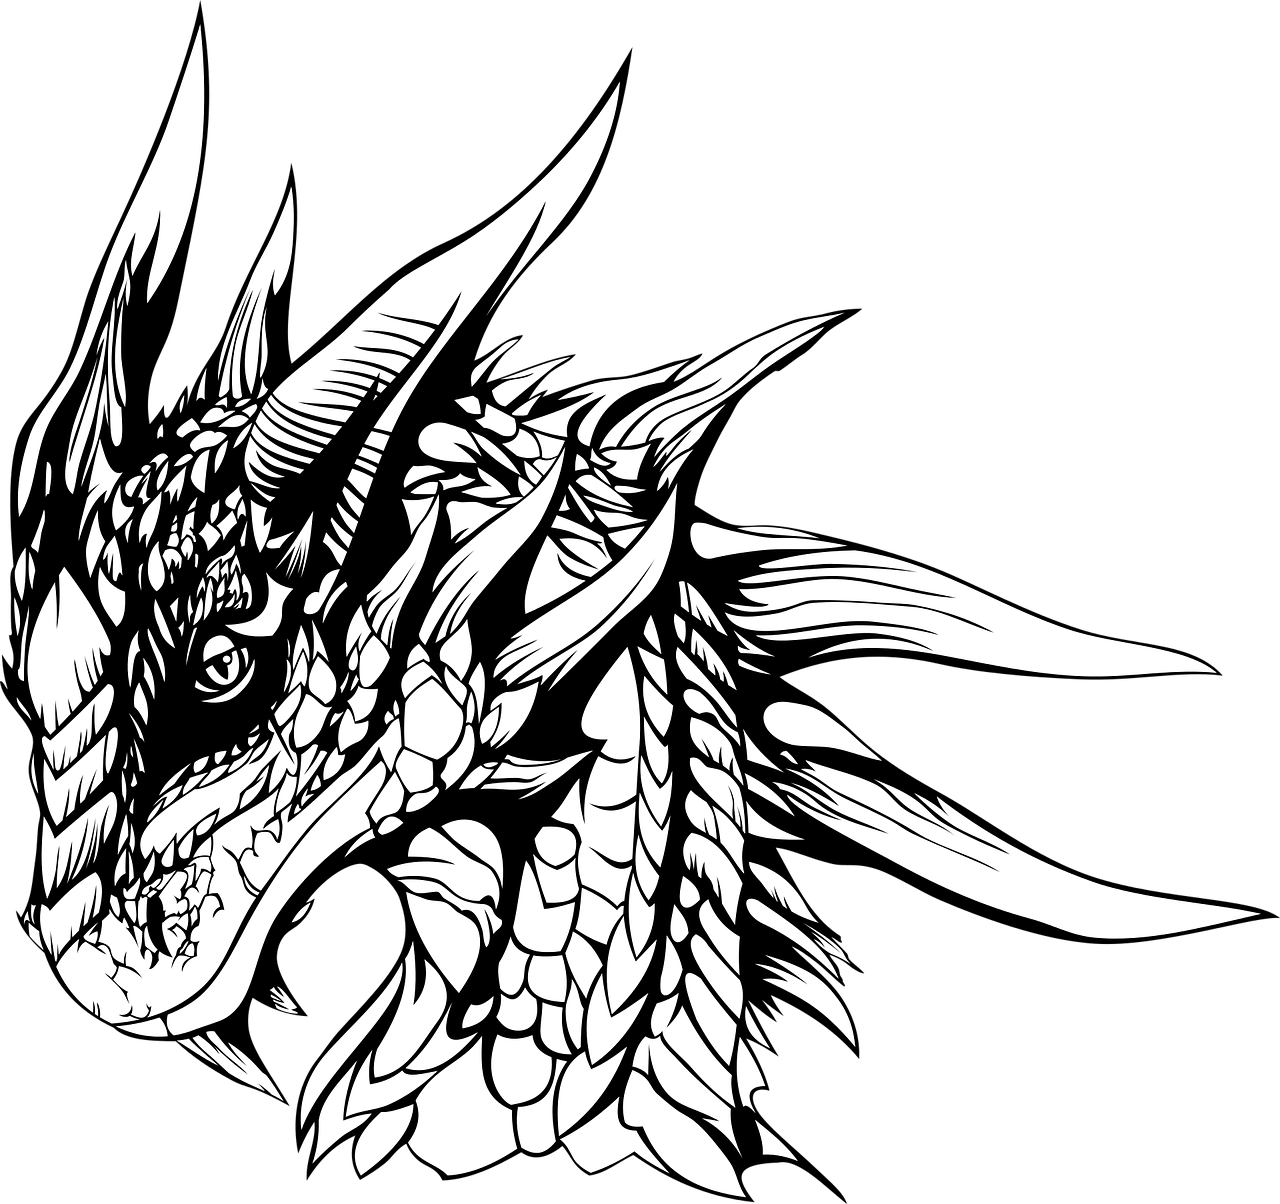 Dragon graphics. Графичный дракон. Голова дракона тату. Дракон тату эскиз. Дракон черно белый.